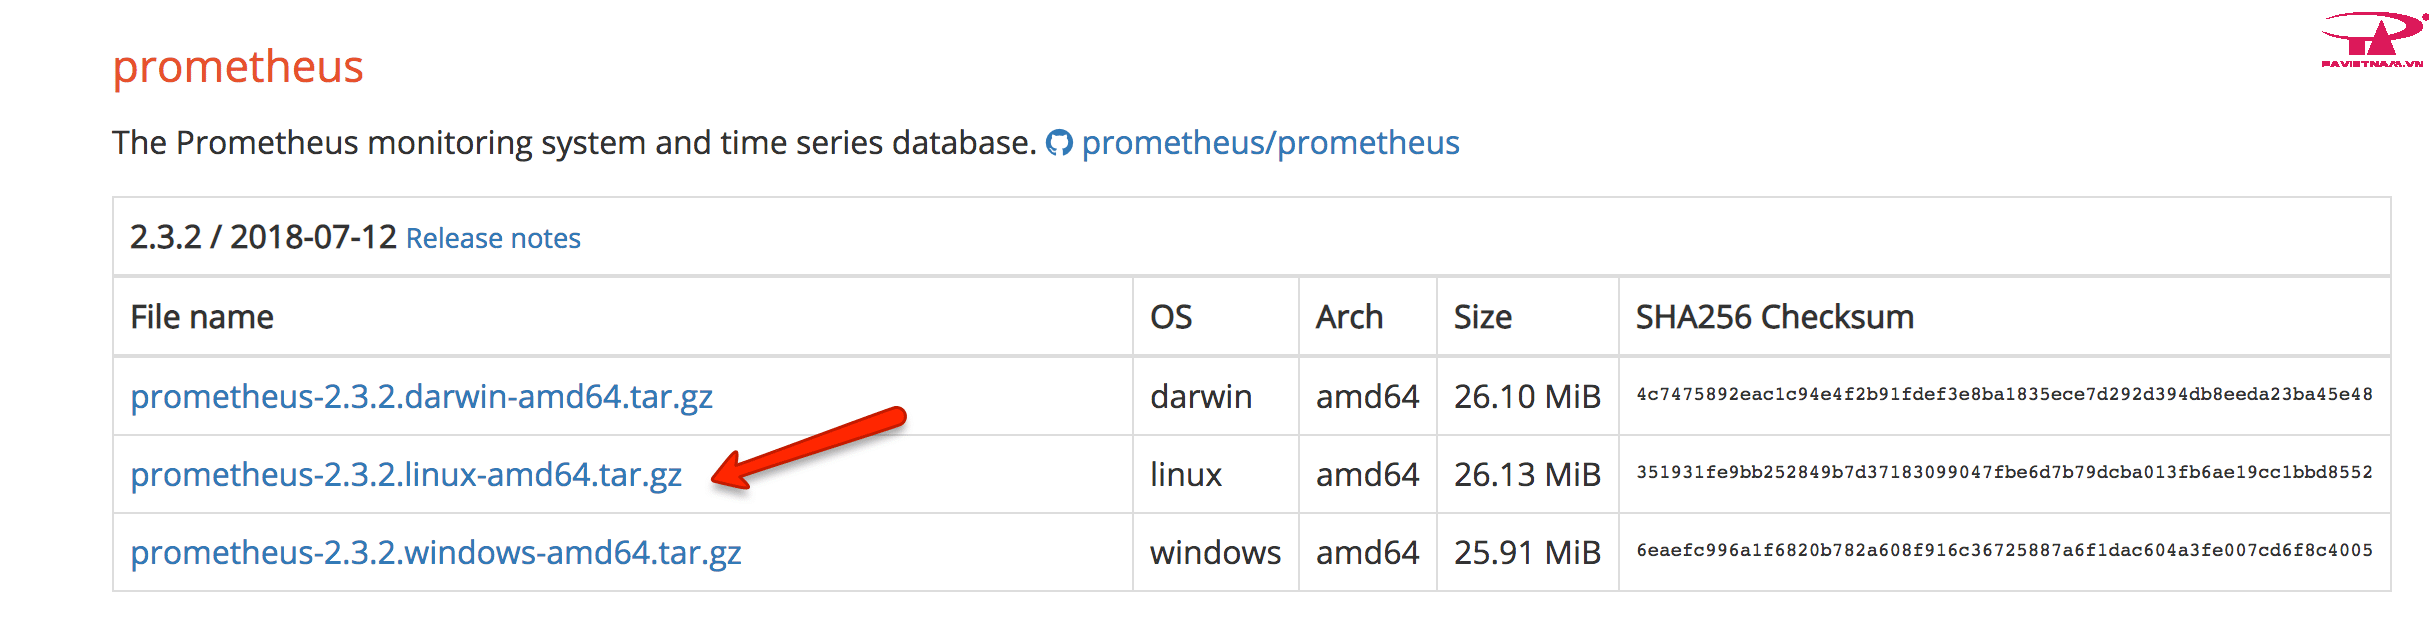 Hướng dẫn cài đặt Prometheus trên Linux